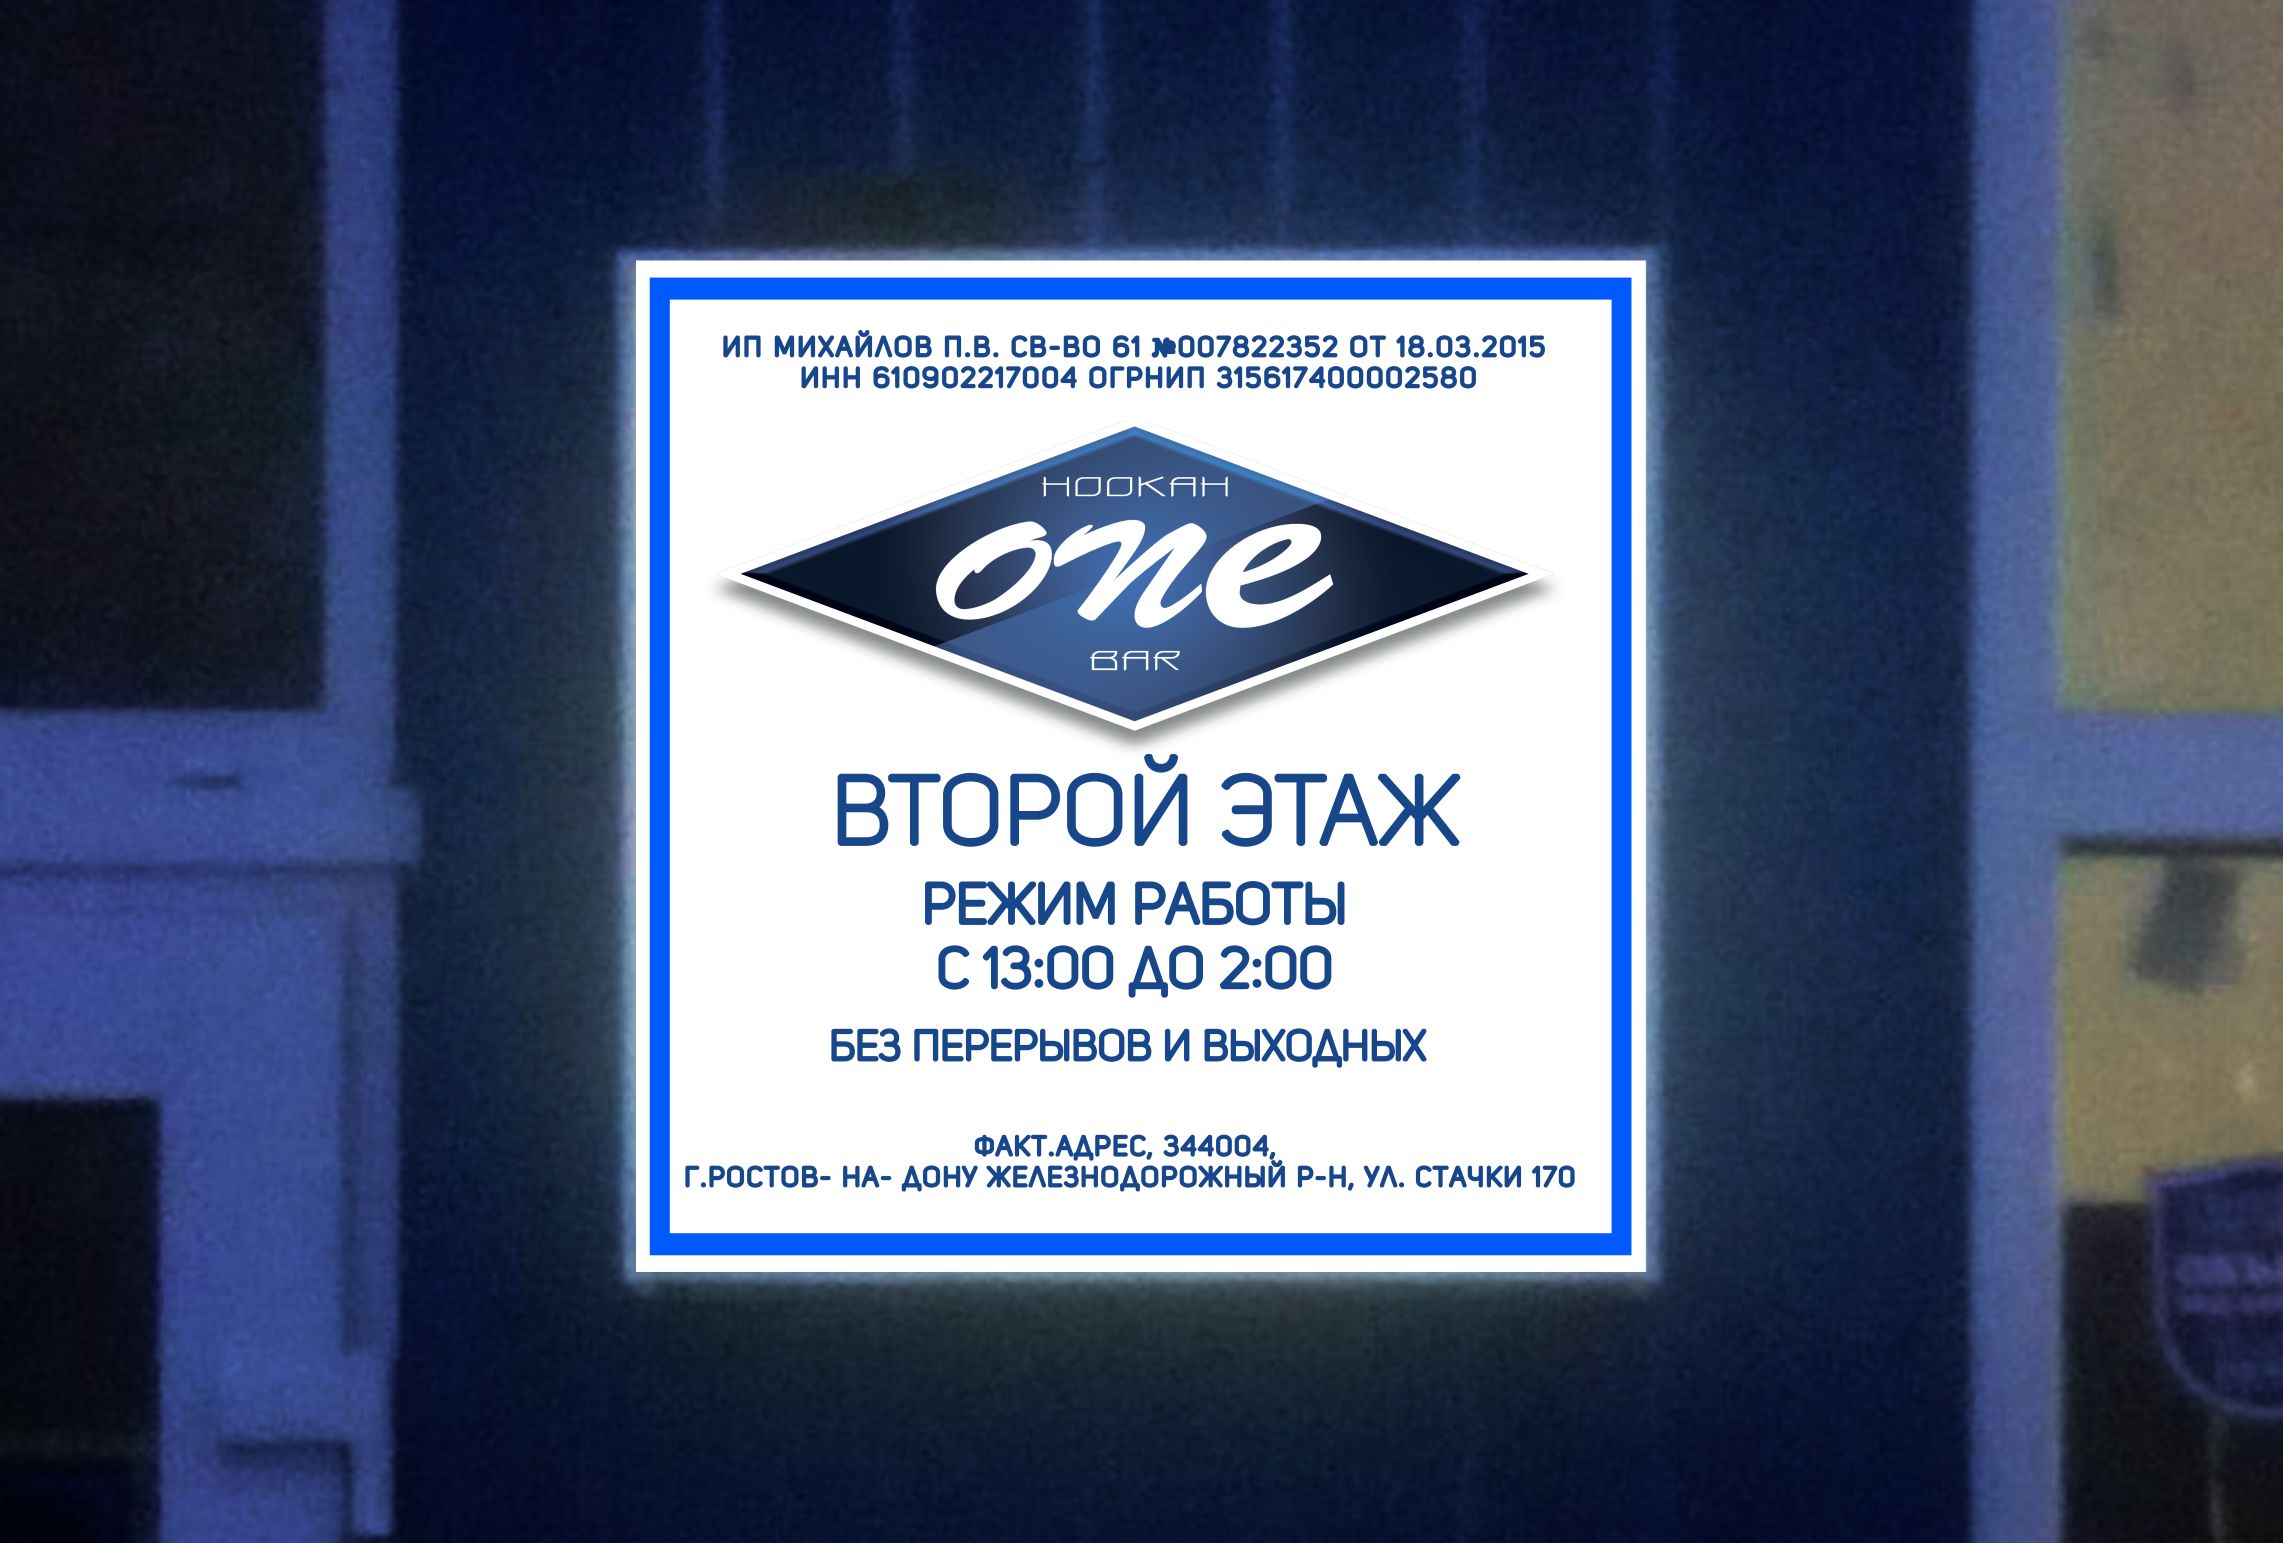 Выполнен заказ на изготовление вывески световой для бара в Ростове-на-Дону.